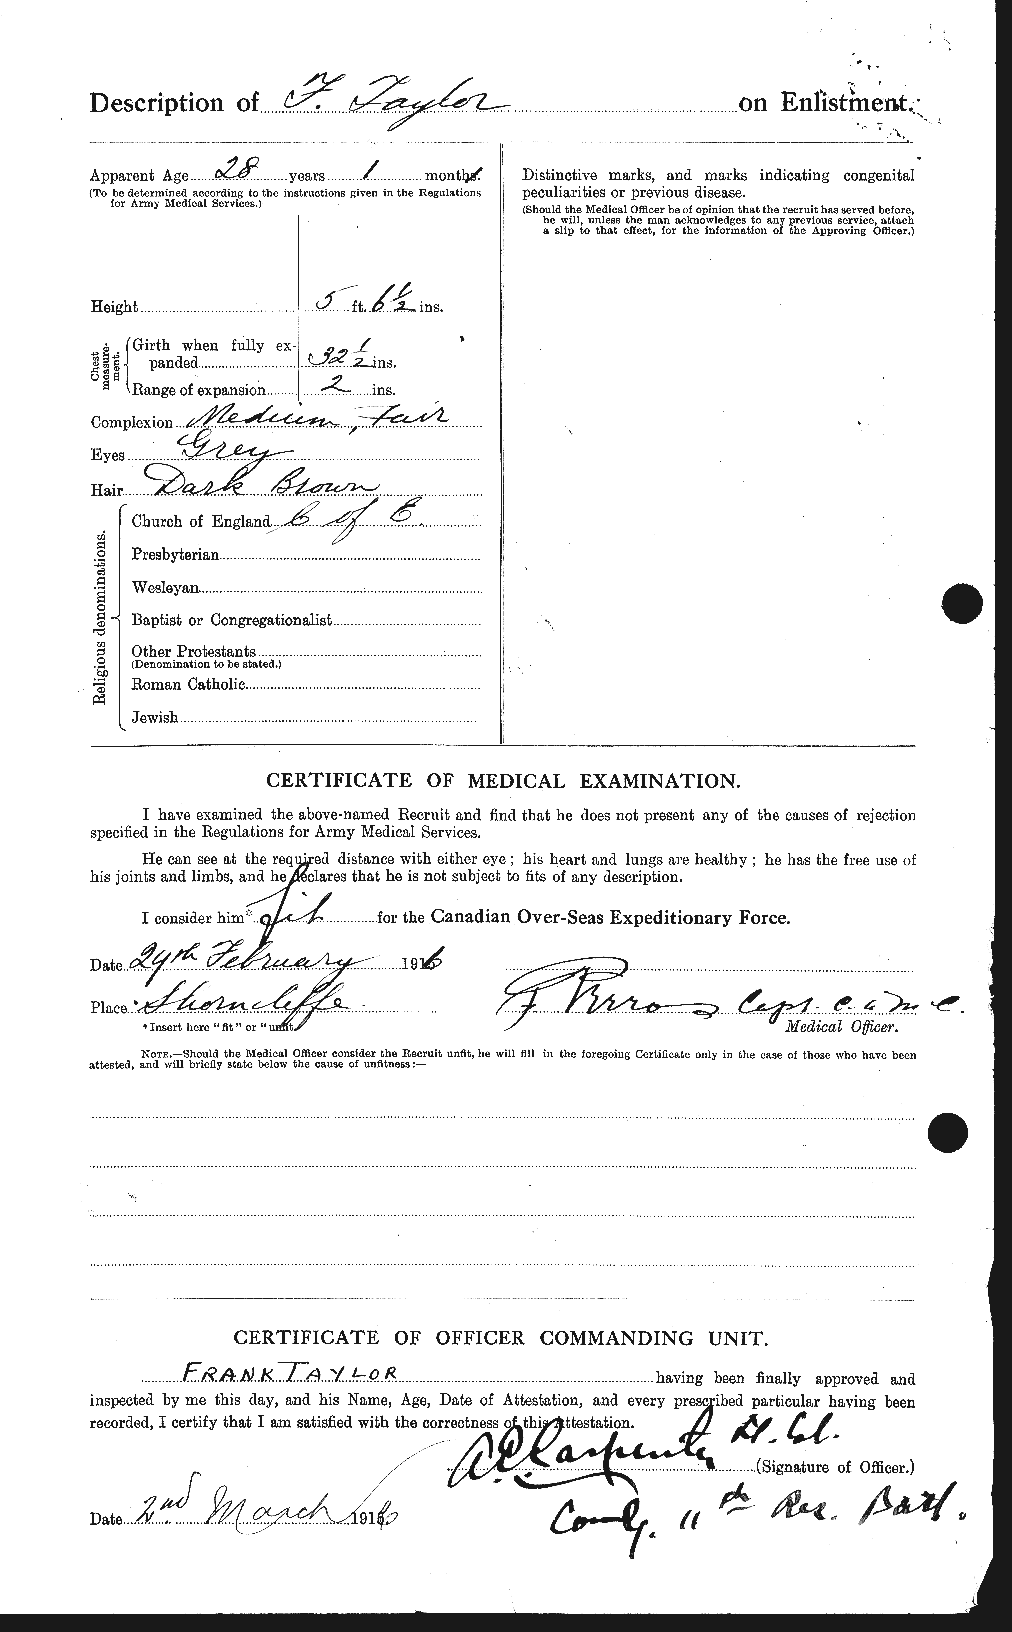 Dossiers du Personnel de la Première Guerre mondiale - CEC 625706b